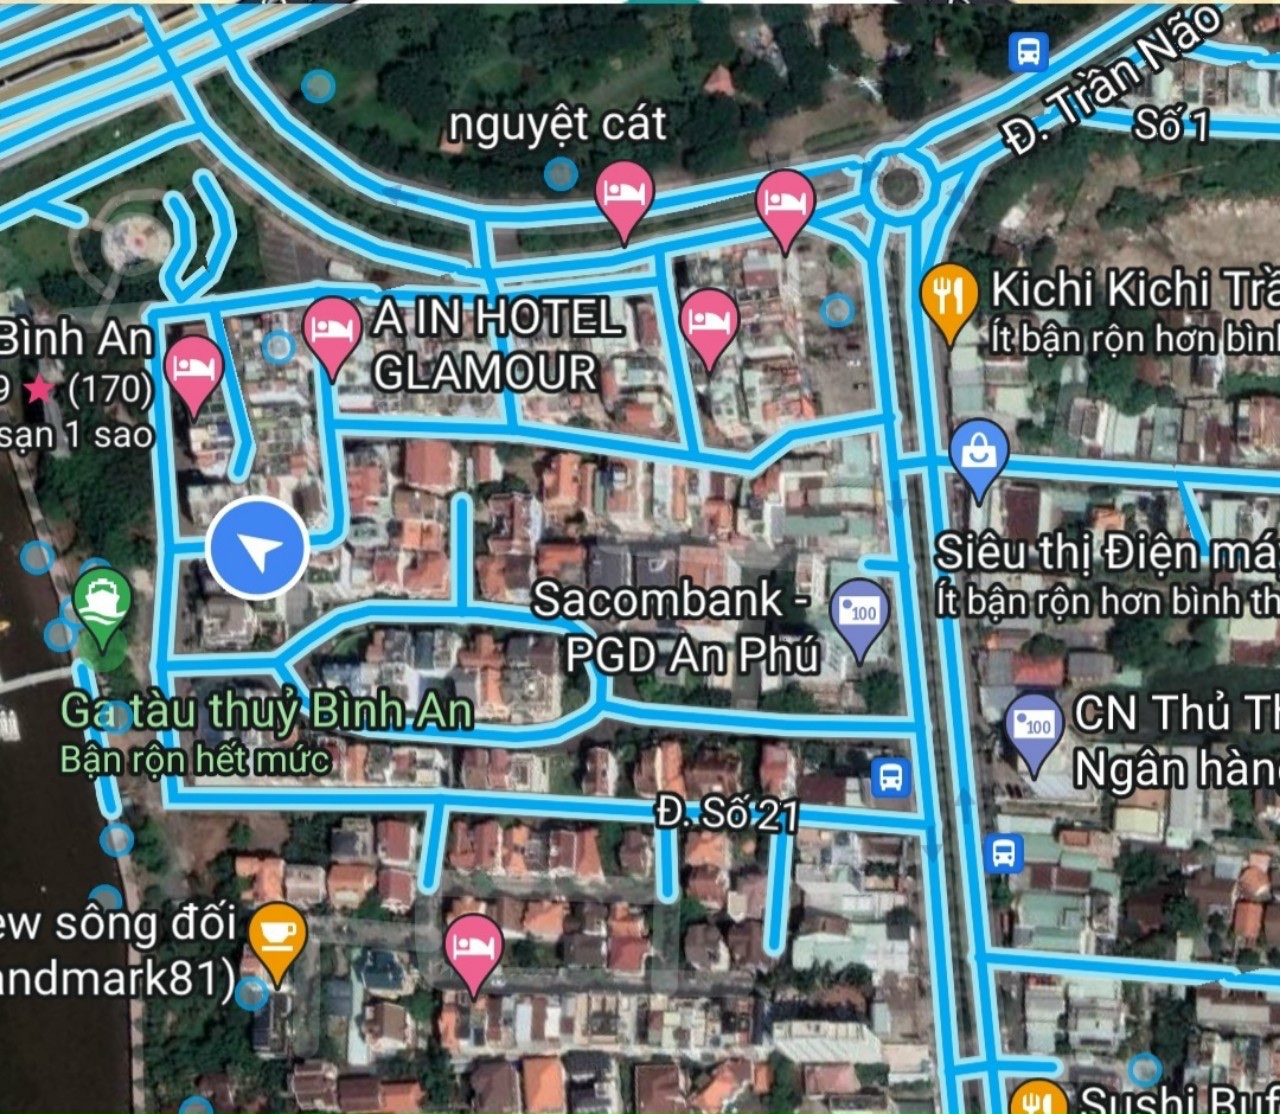 Bán nhà phố Khu Hải Quân - P.Bình An gần Trần Não  Nhà 4 lầu 9pn + Thu nhập 45 triệu/th ☎ 0903034123